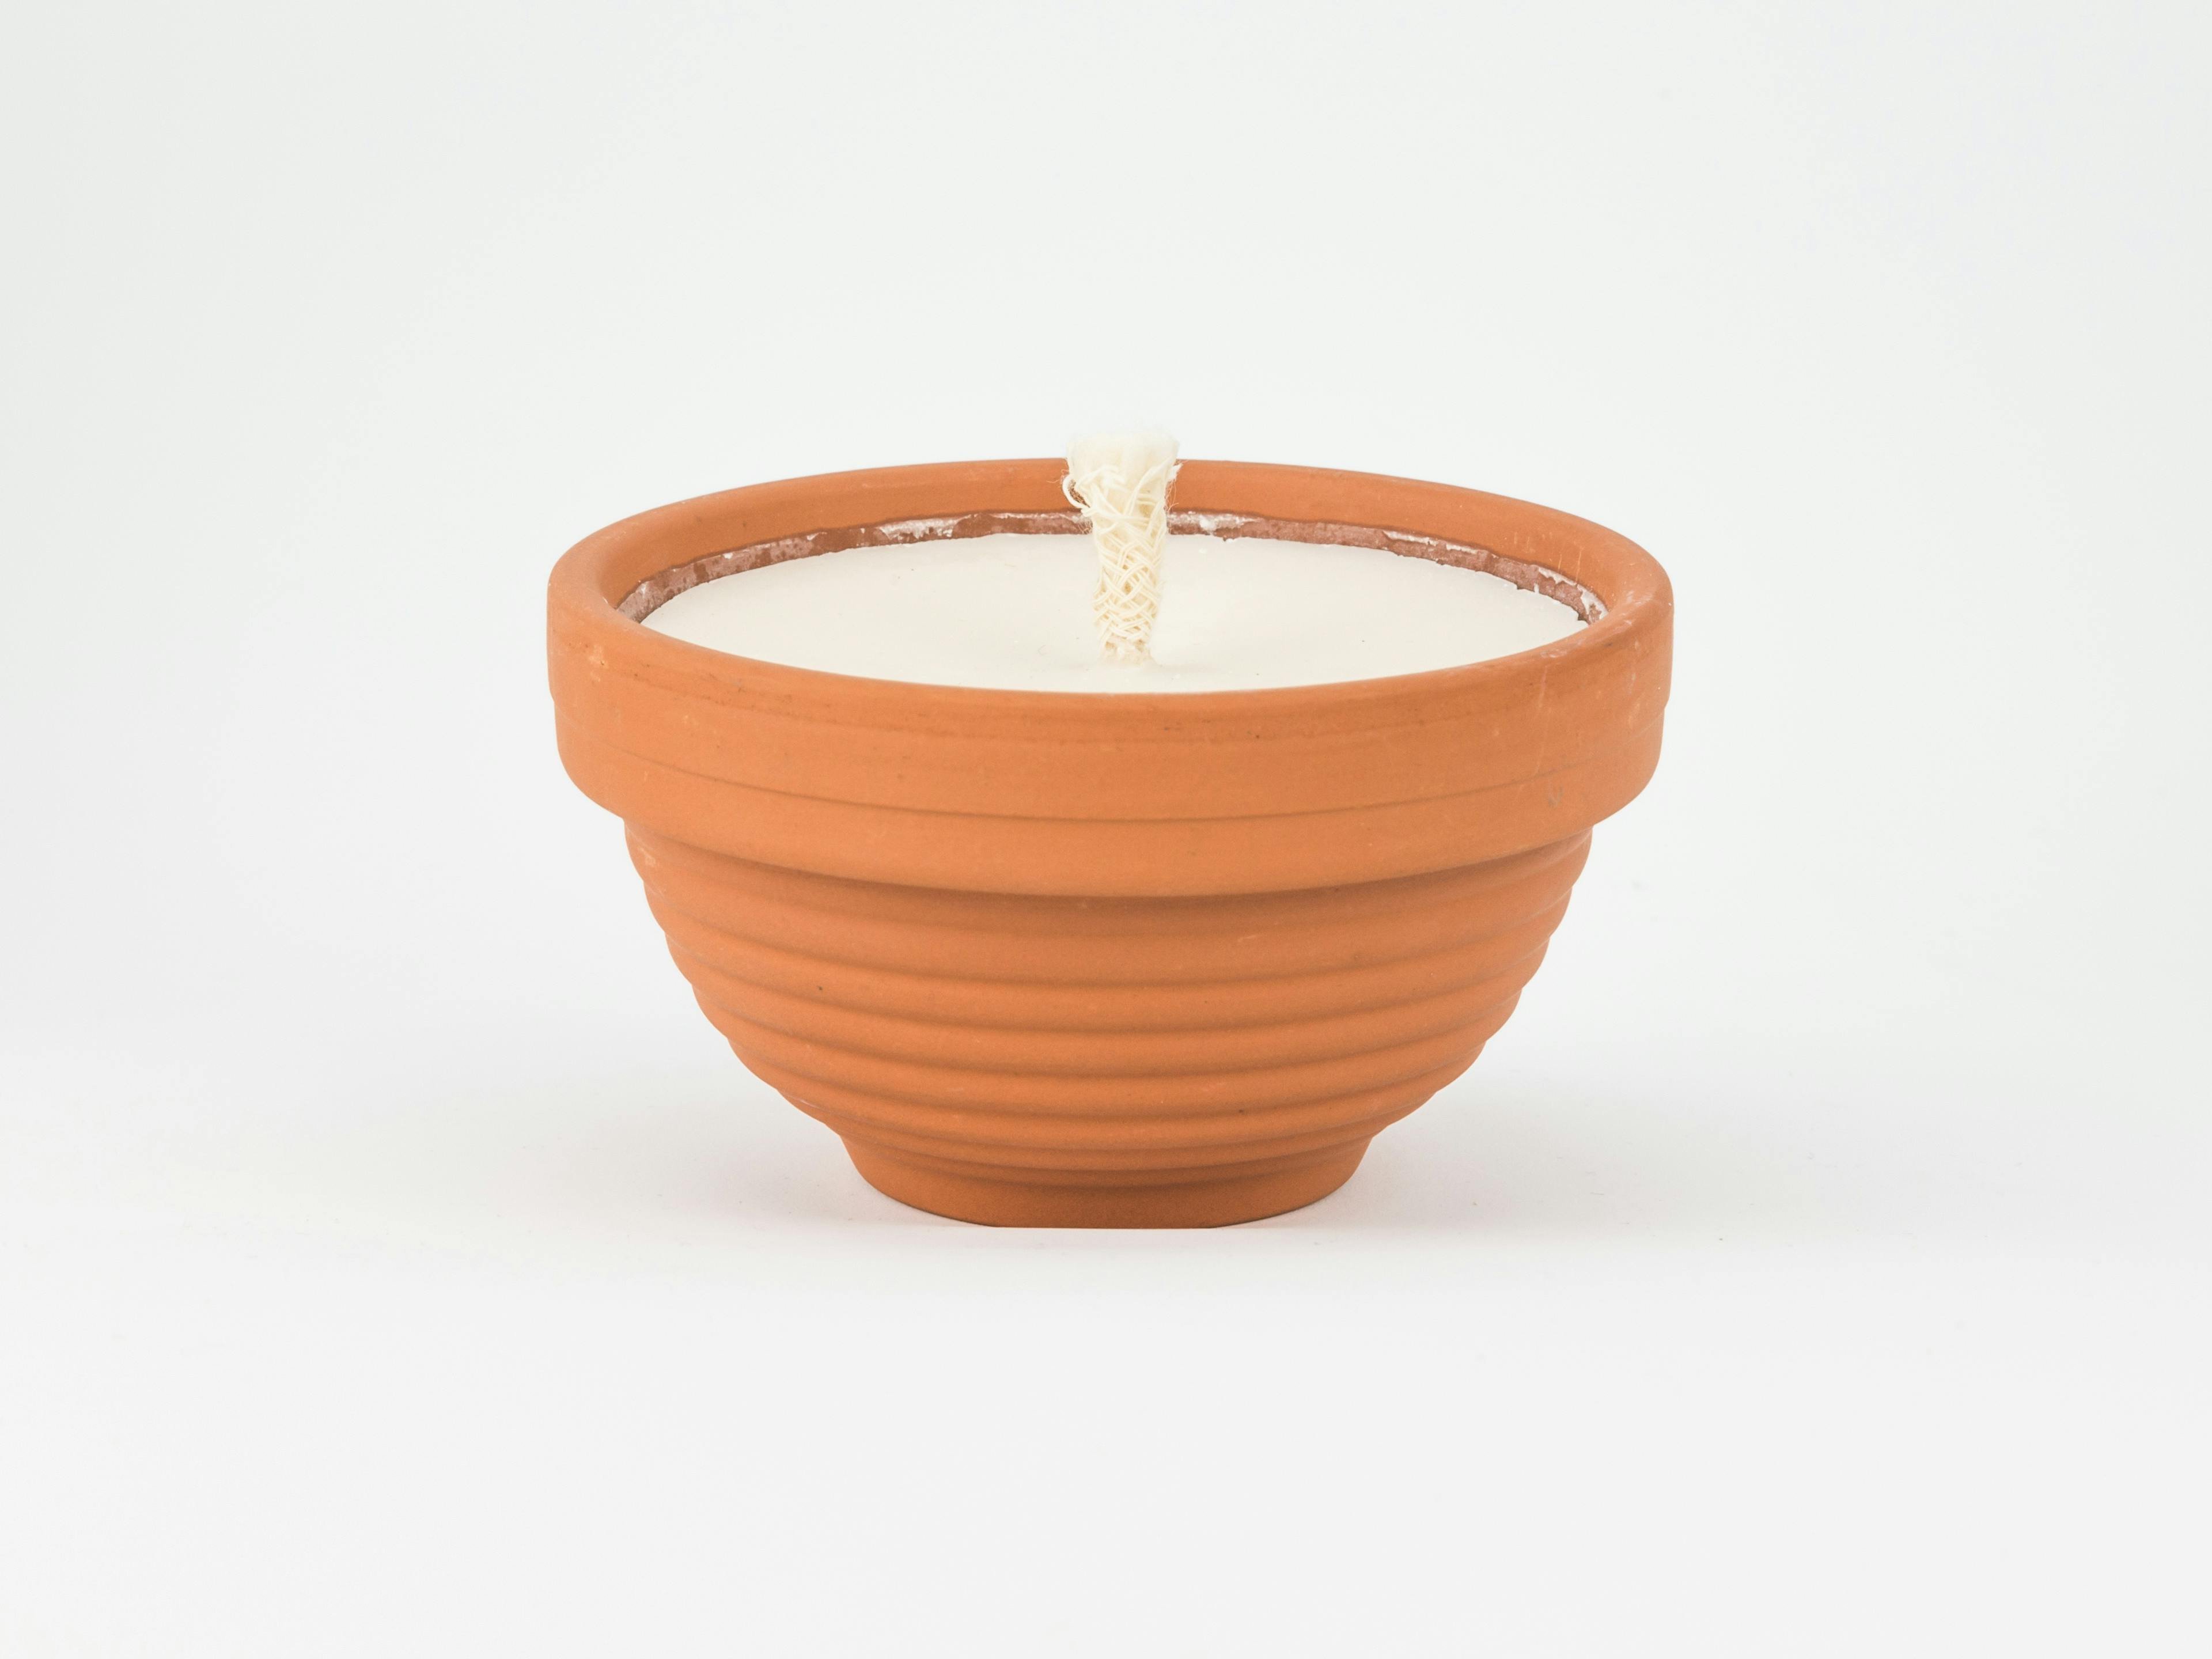 Bougies petit pot en terre cuite, parfum Noix de coco & Citronnelle, produit artisanal en vente directe en Suisse